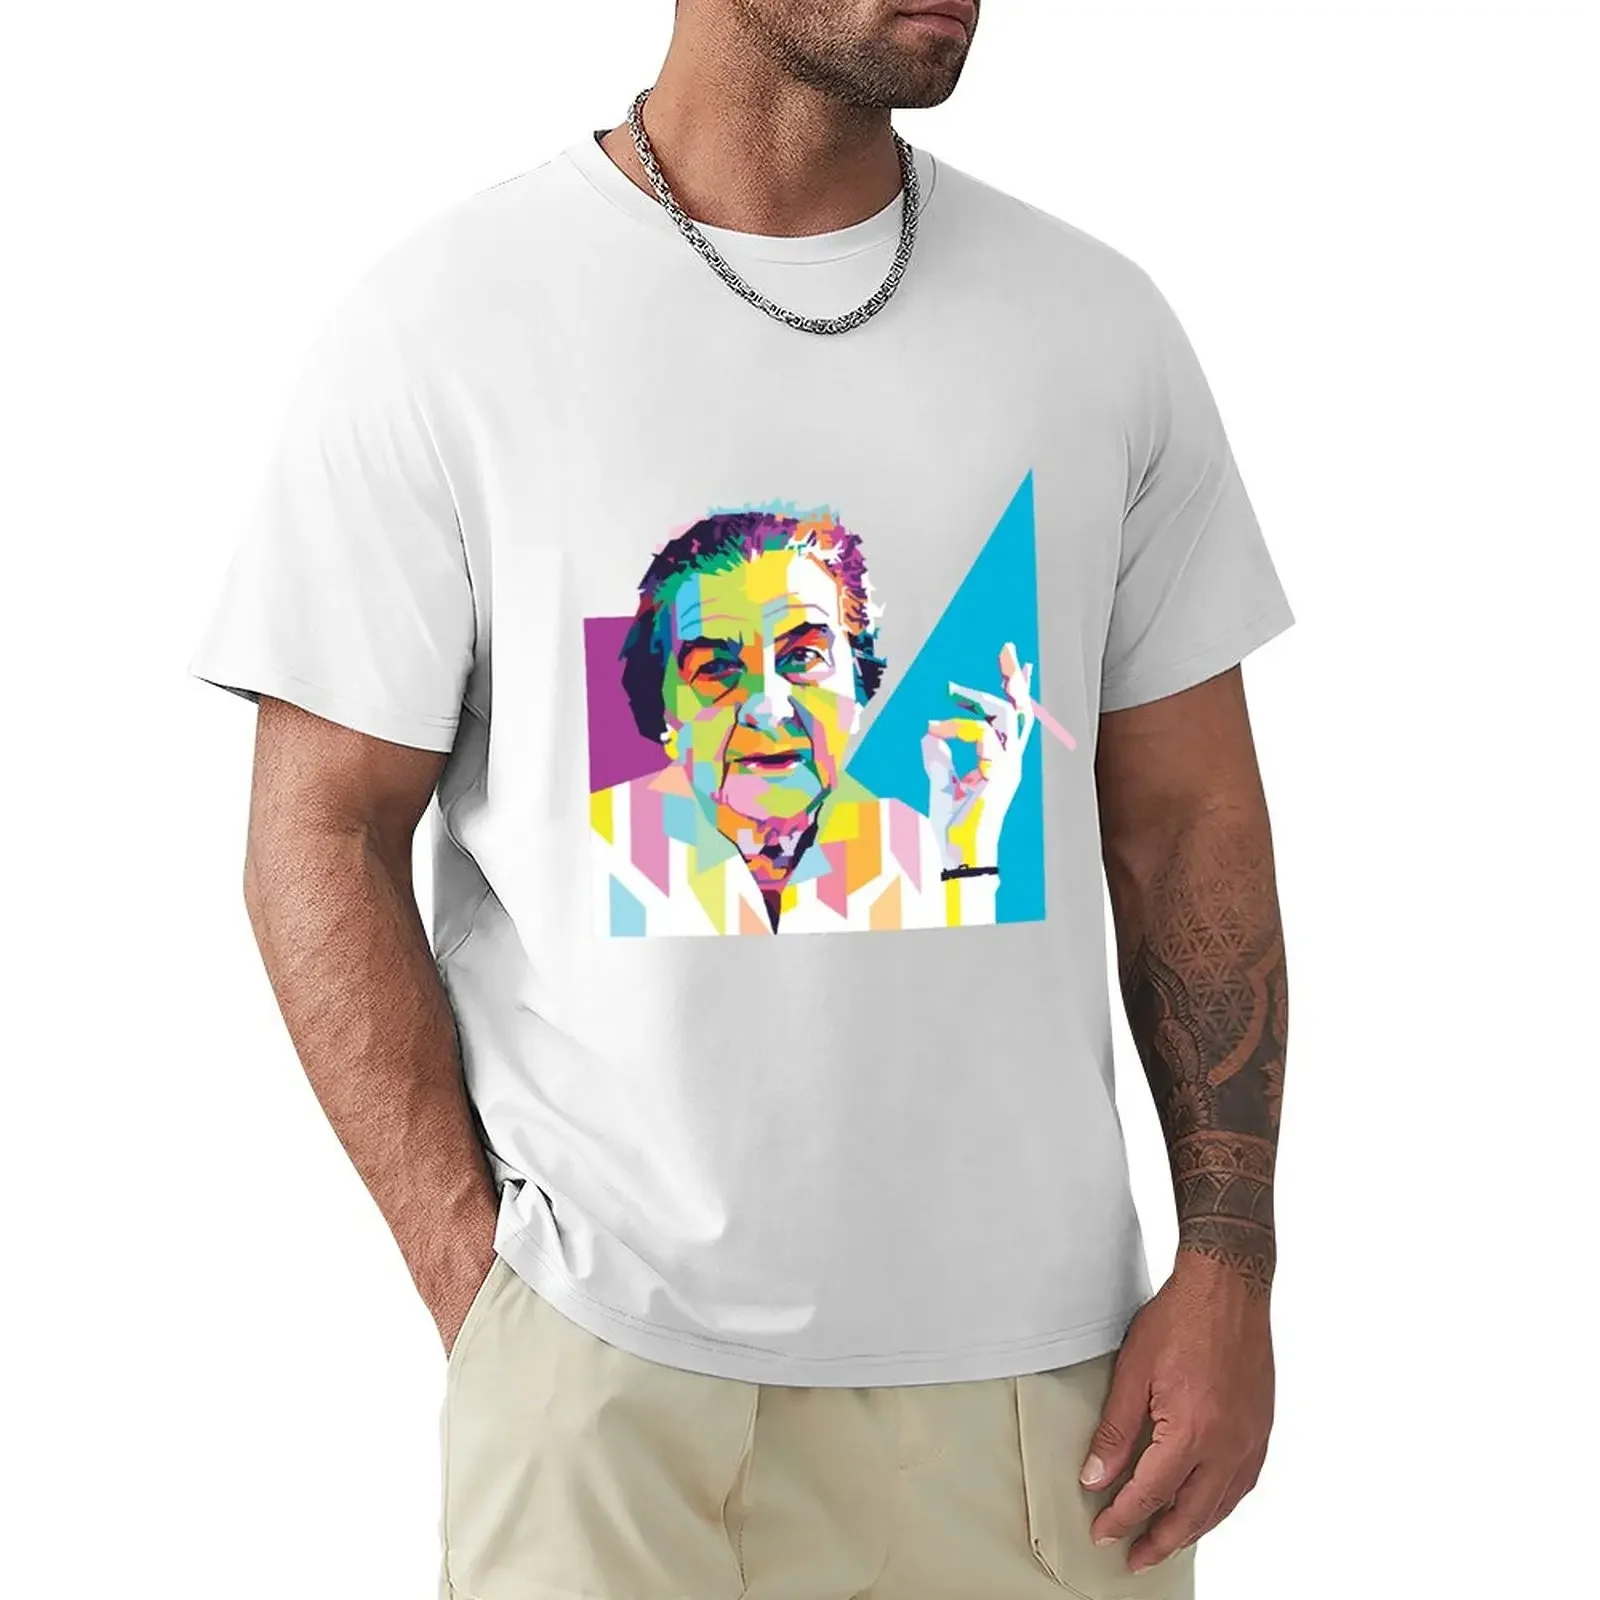 

Футболка Golda Meir, спортивная одежда для фанатов, одежда Аниме, тяжелые футболки для мужчин